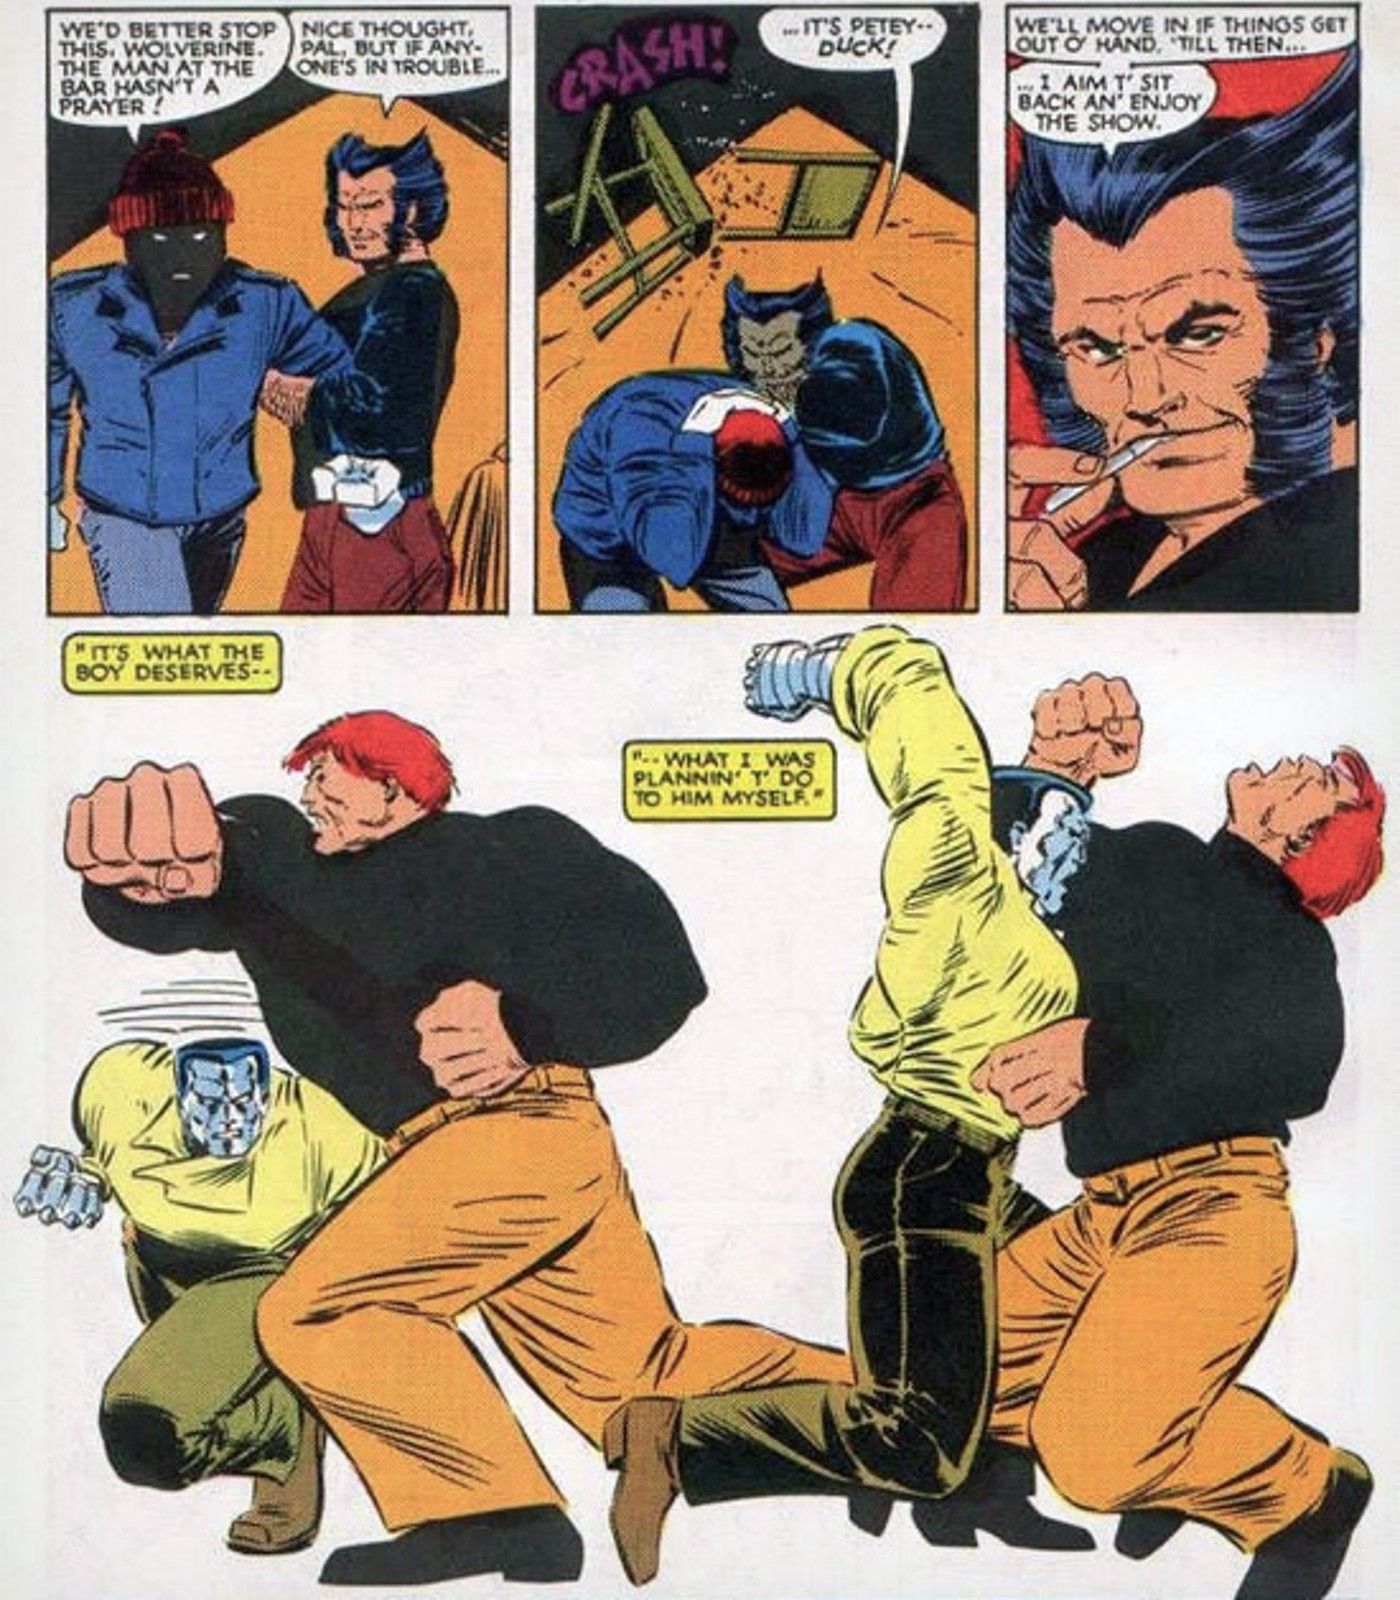 Wolverine assiste X-Men's Colossus lutar contra Juggernaut